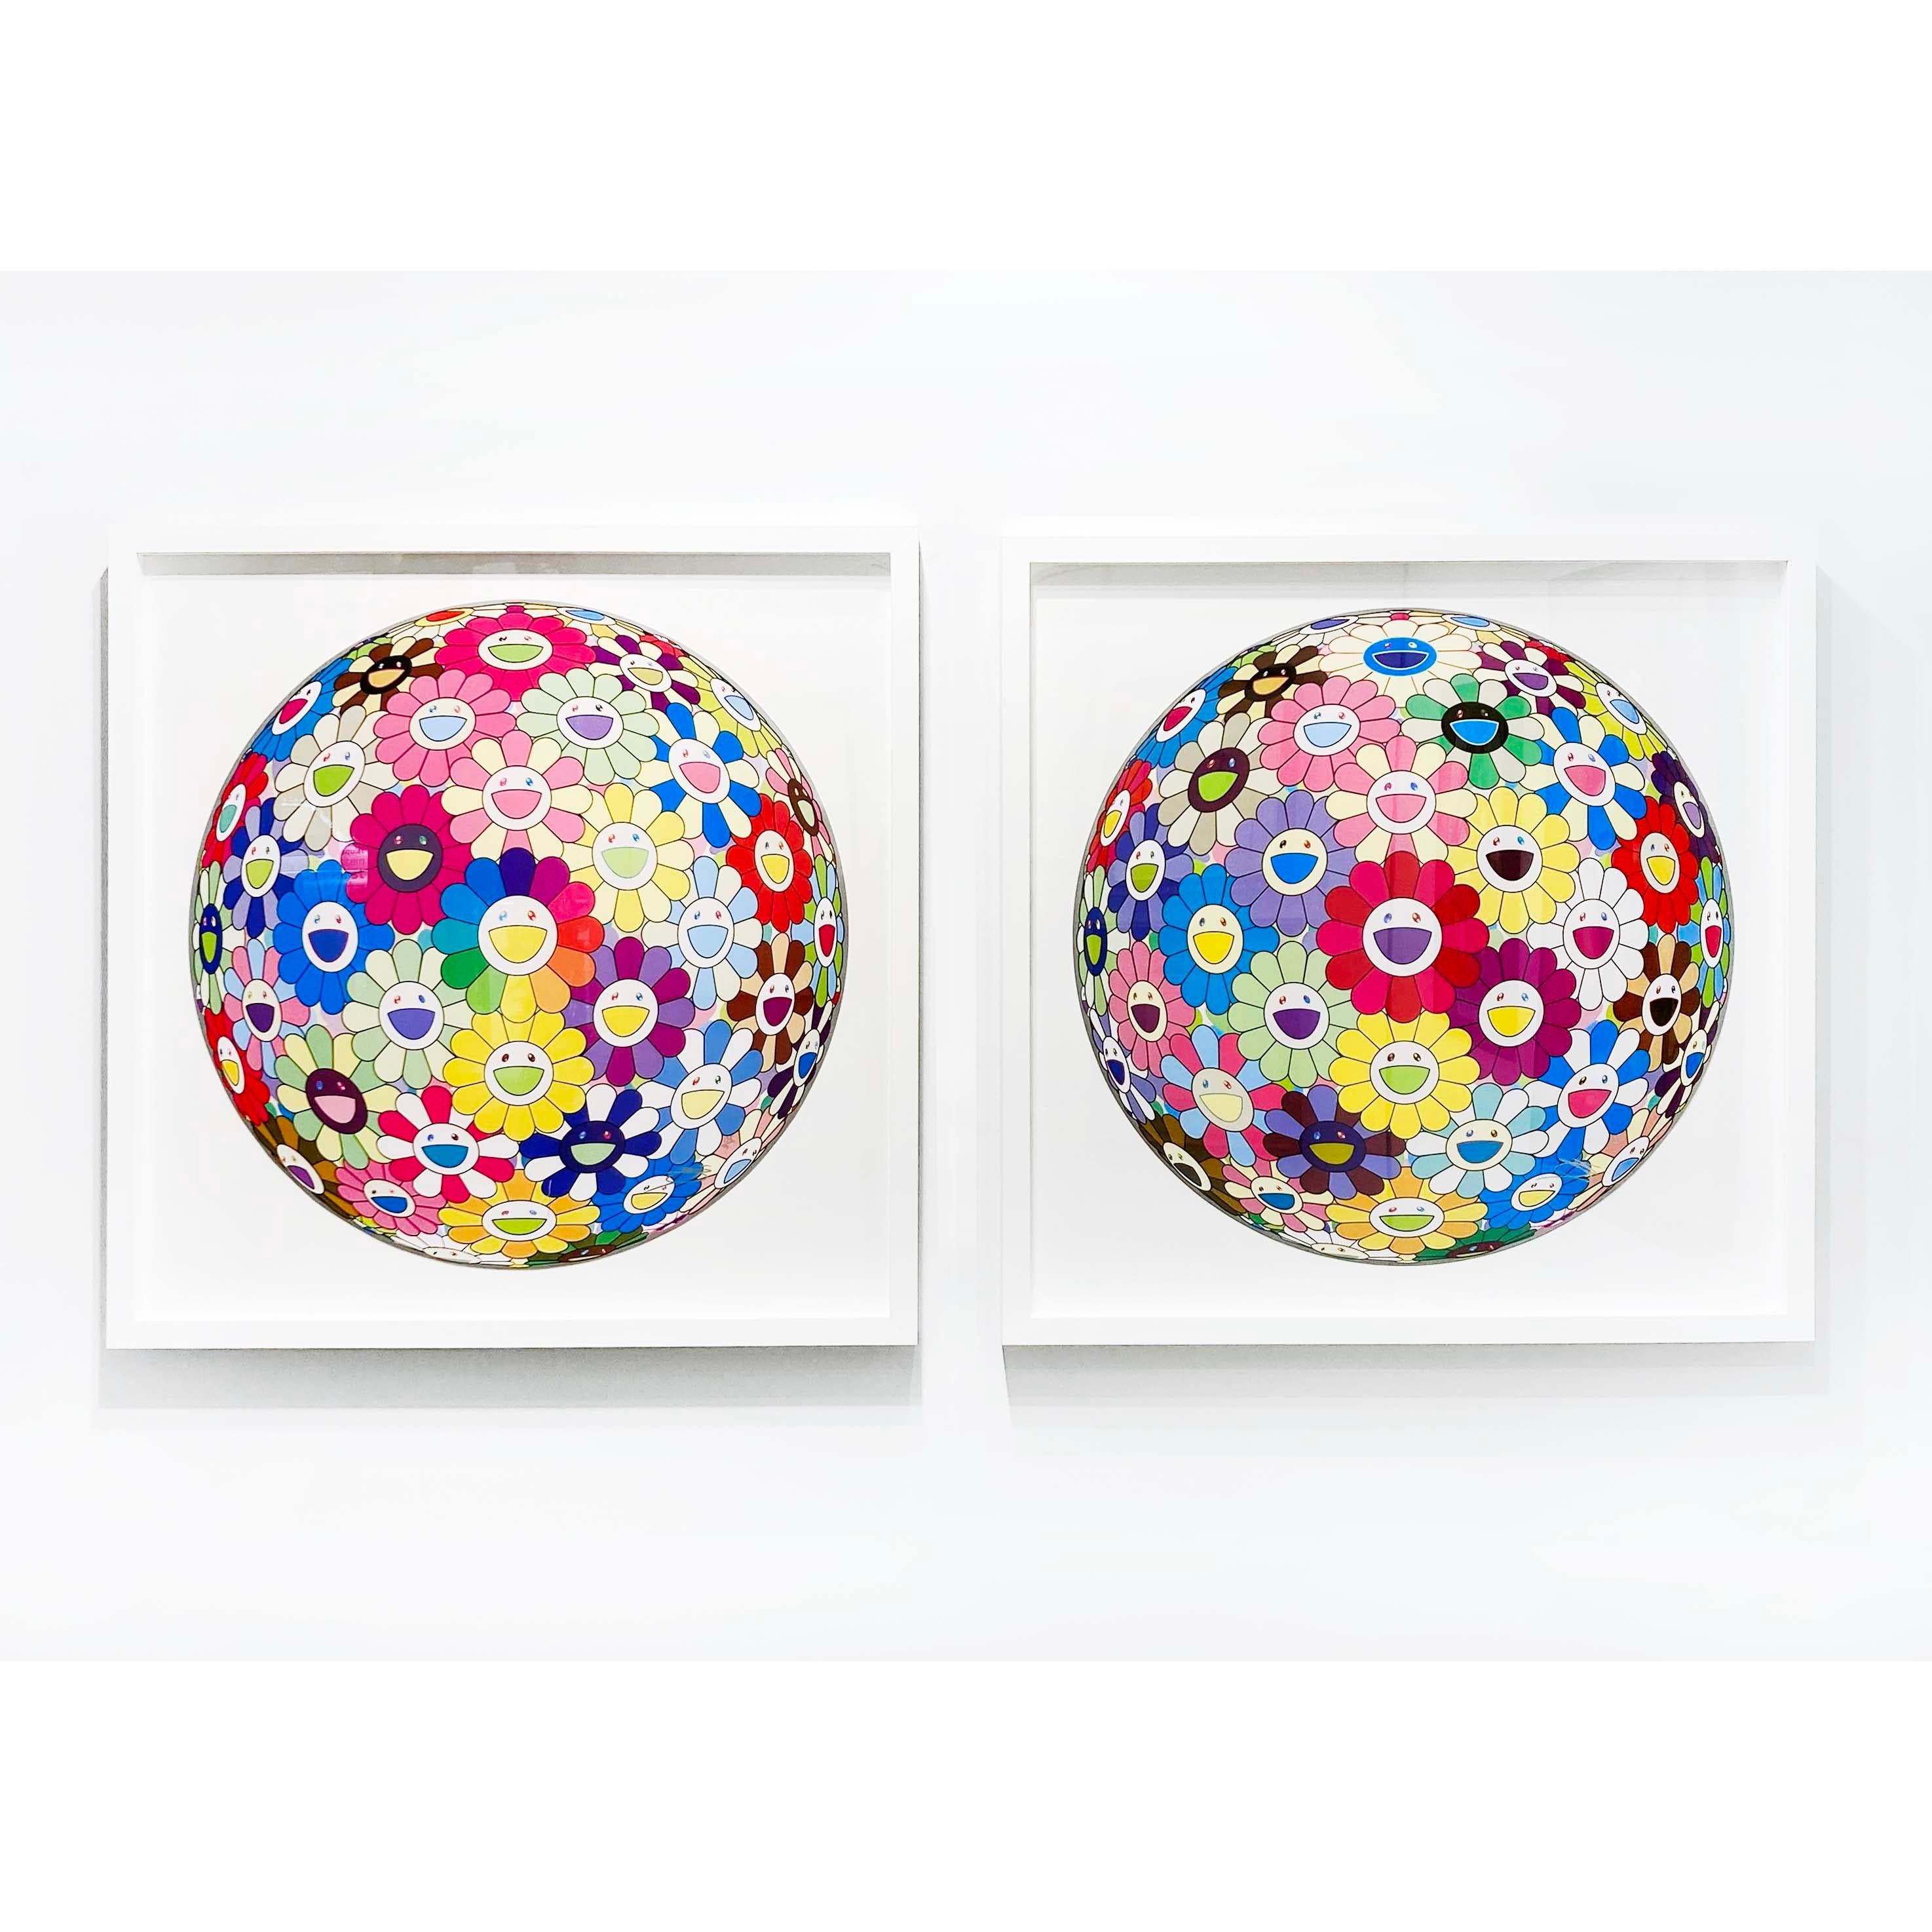 Artiste :  Murakami, Takashi
Titre :  boule de fleurs colorée, miracle, scintillante 
Date :  2022
Moyen :  Lithographie offset en couleurs sur papier vélin lisse
Sans cadre Dimensions :  28